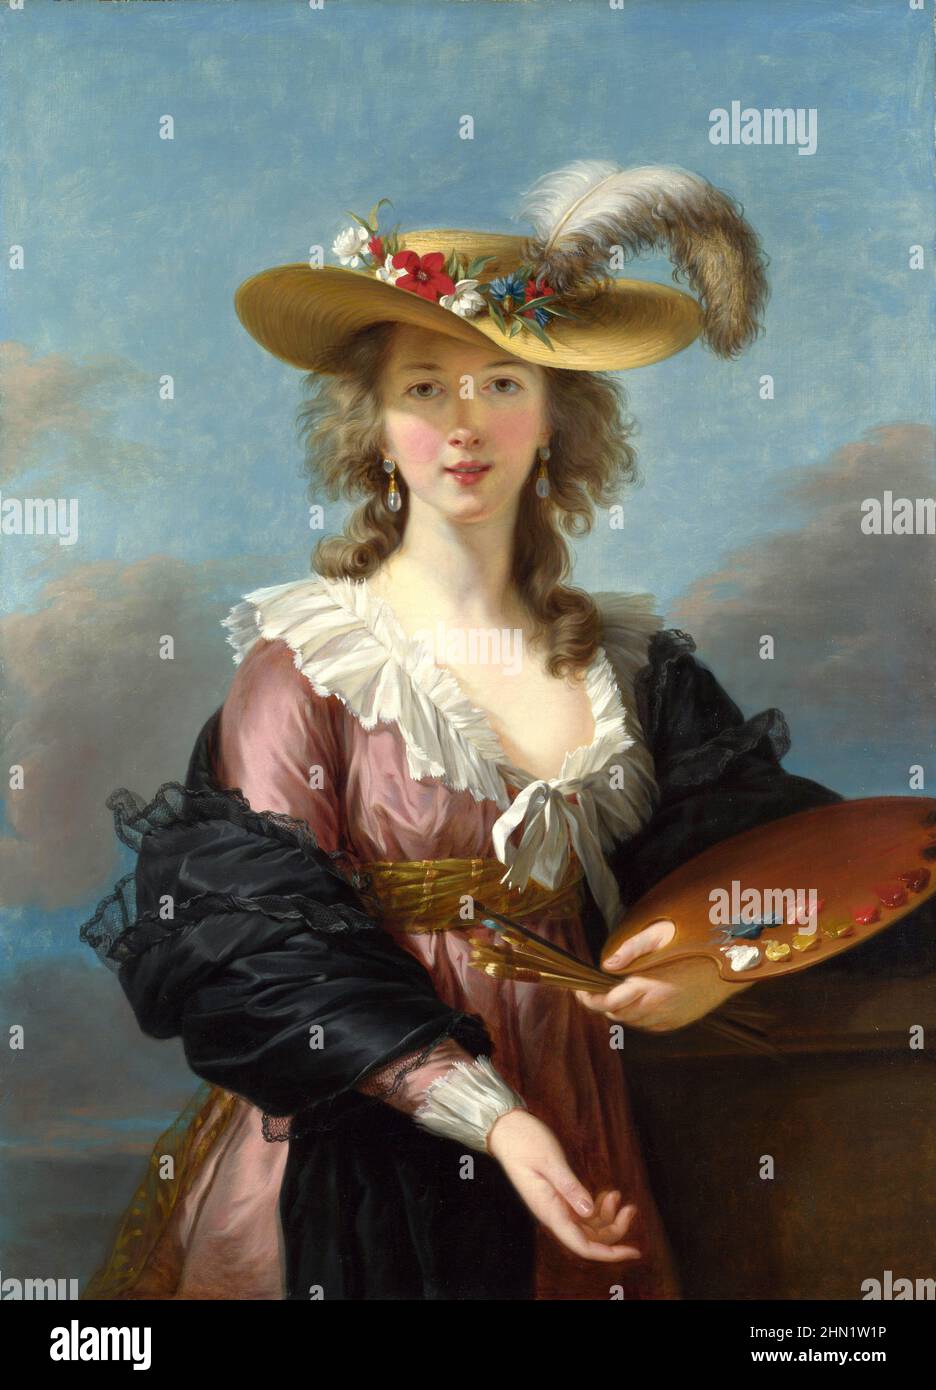 Élisabeth Louise Vigée le Brun (1755 – 1842) conosciuta come Madame le Brun, ritratto pittore francese alla fine del 18th secolo. Autoritratto in un cappello di paglia, 1782 Foto Stock